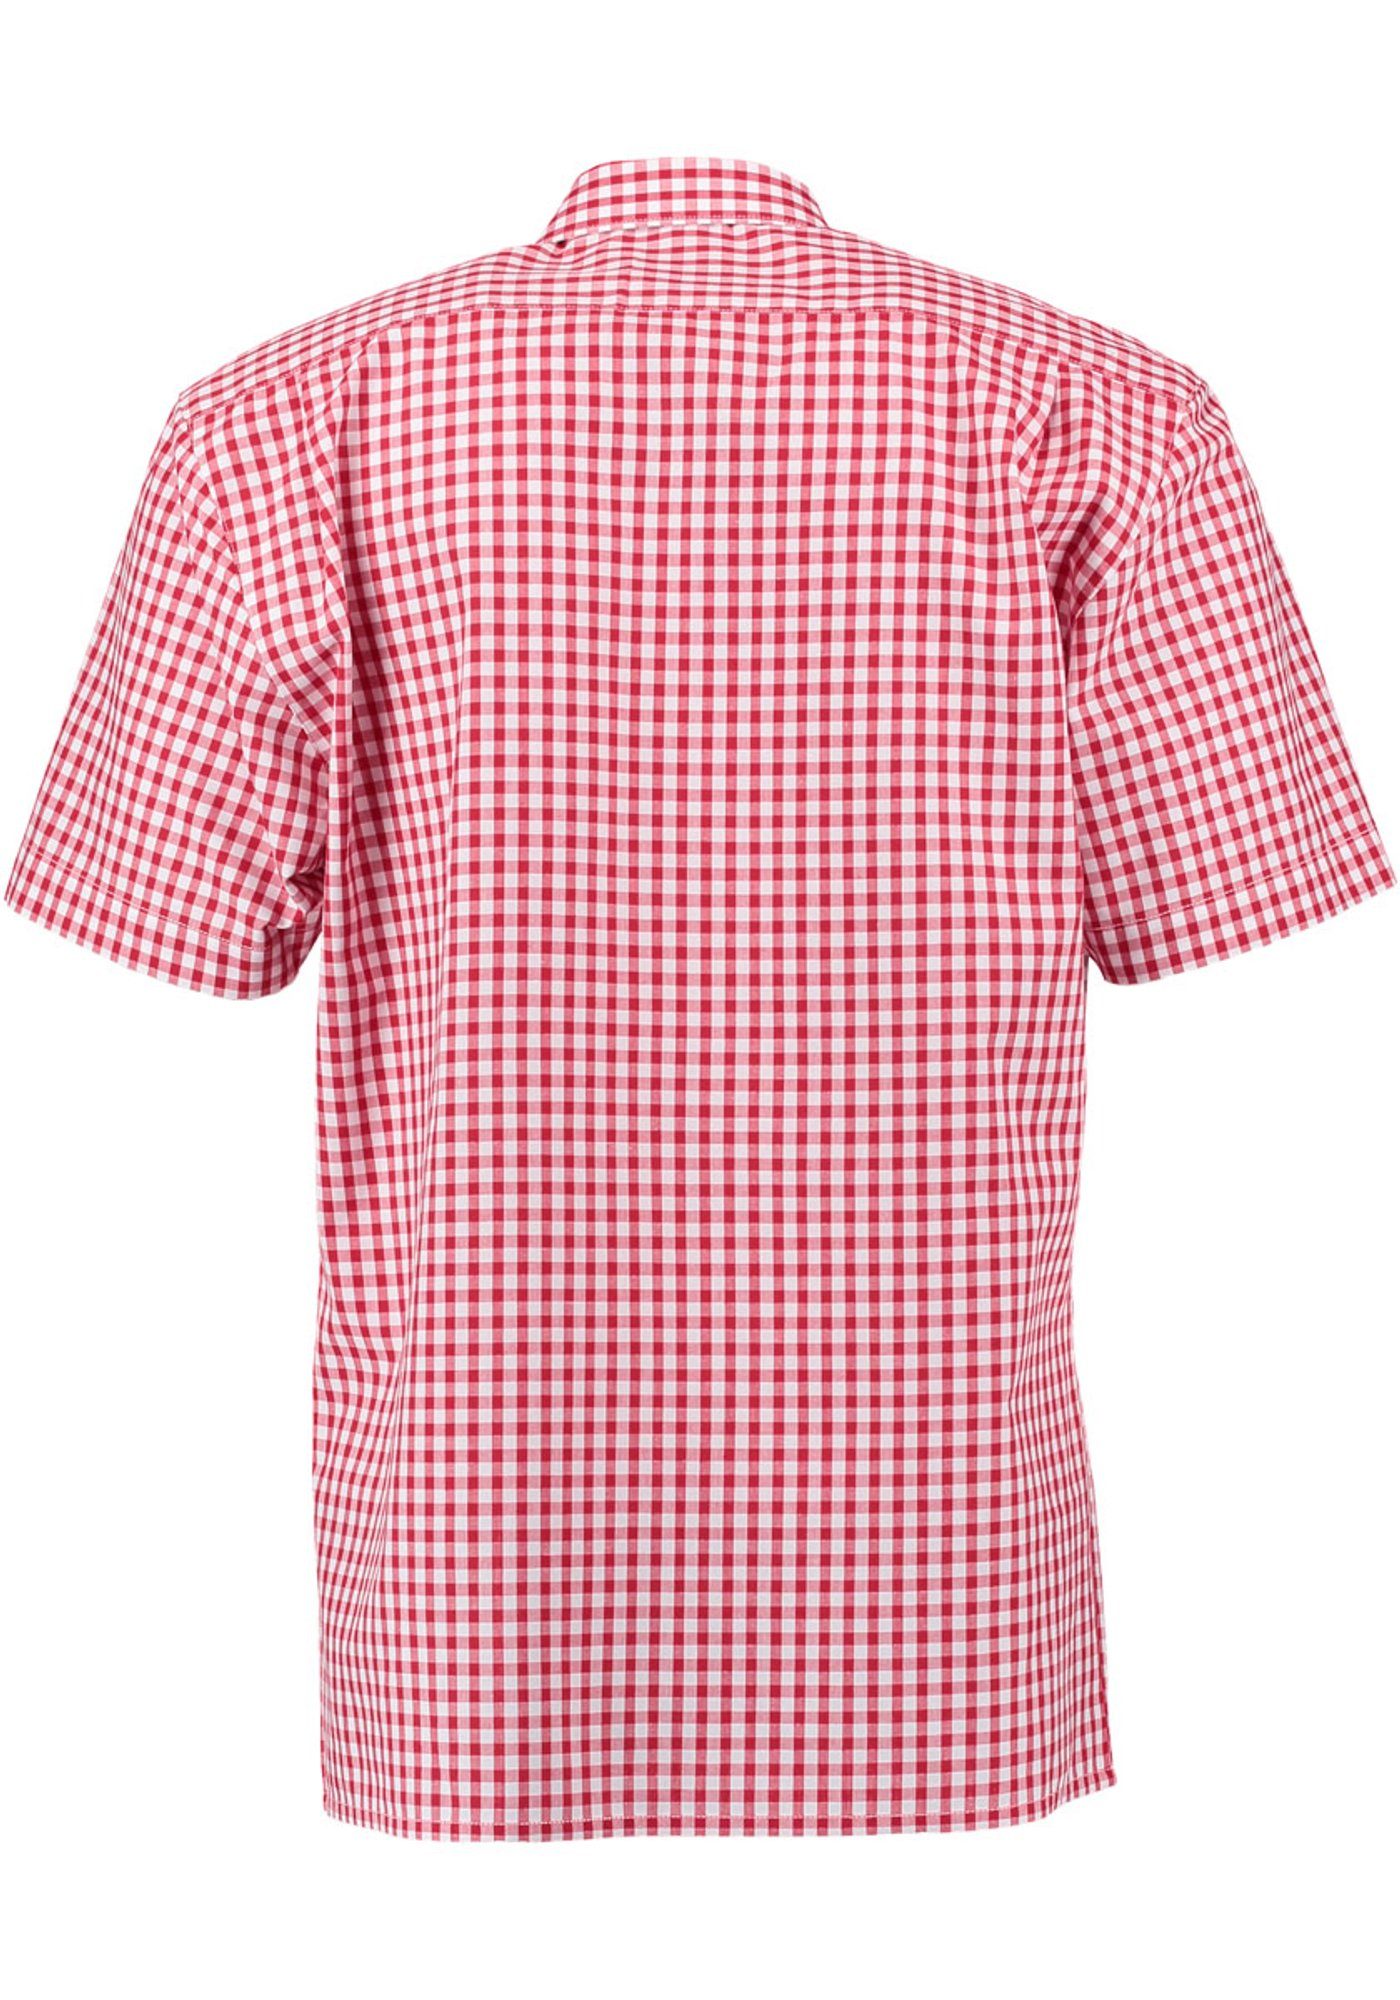 mit Zihul aufgesetzter Trachtenhemd Kurzarmhemd mittelrot Brusttasche mit Hirsch-Stickerei OS-Trachten